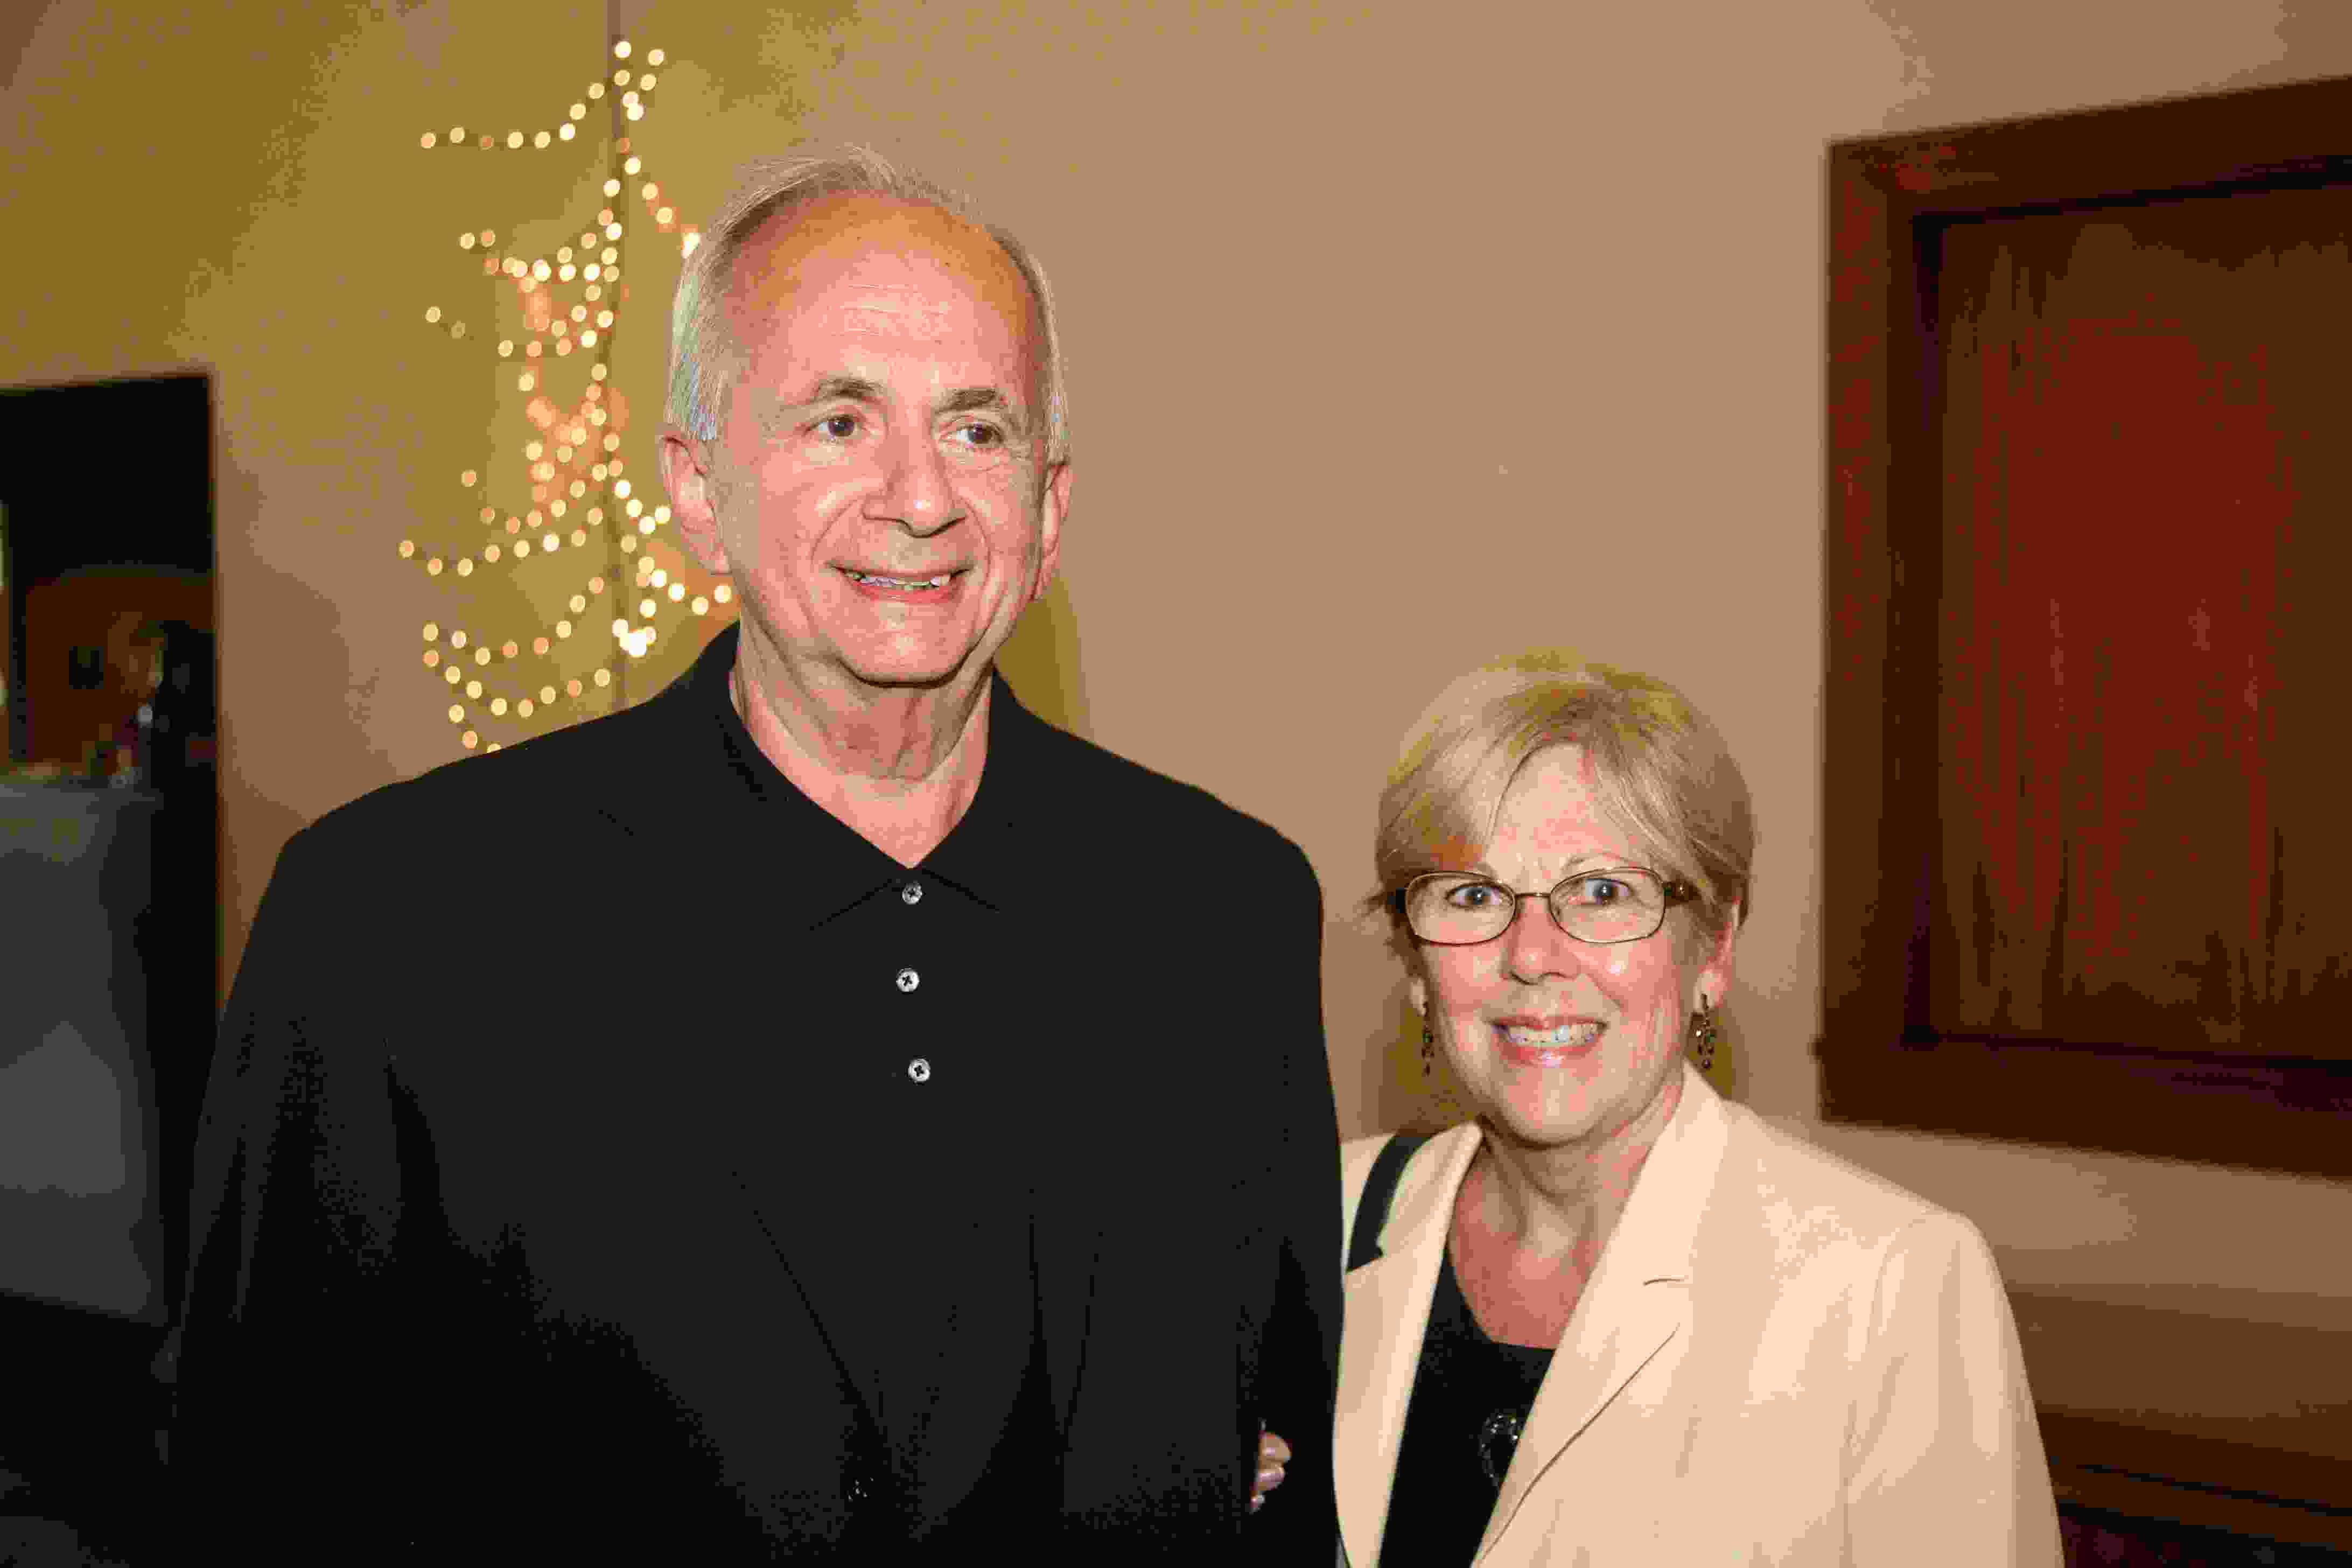 Linda Divris and husband Bruce